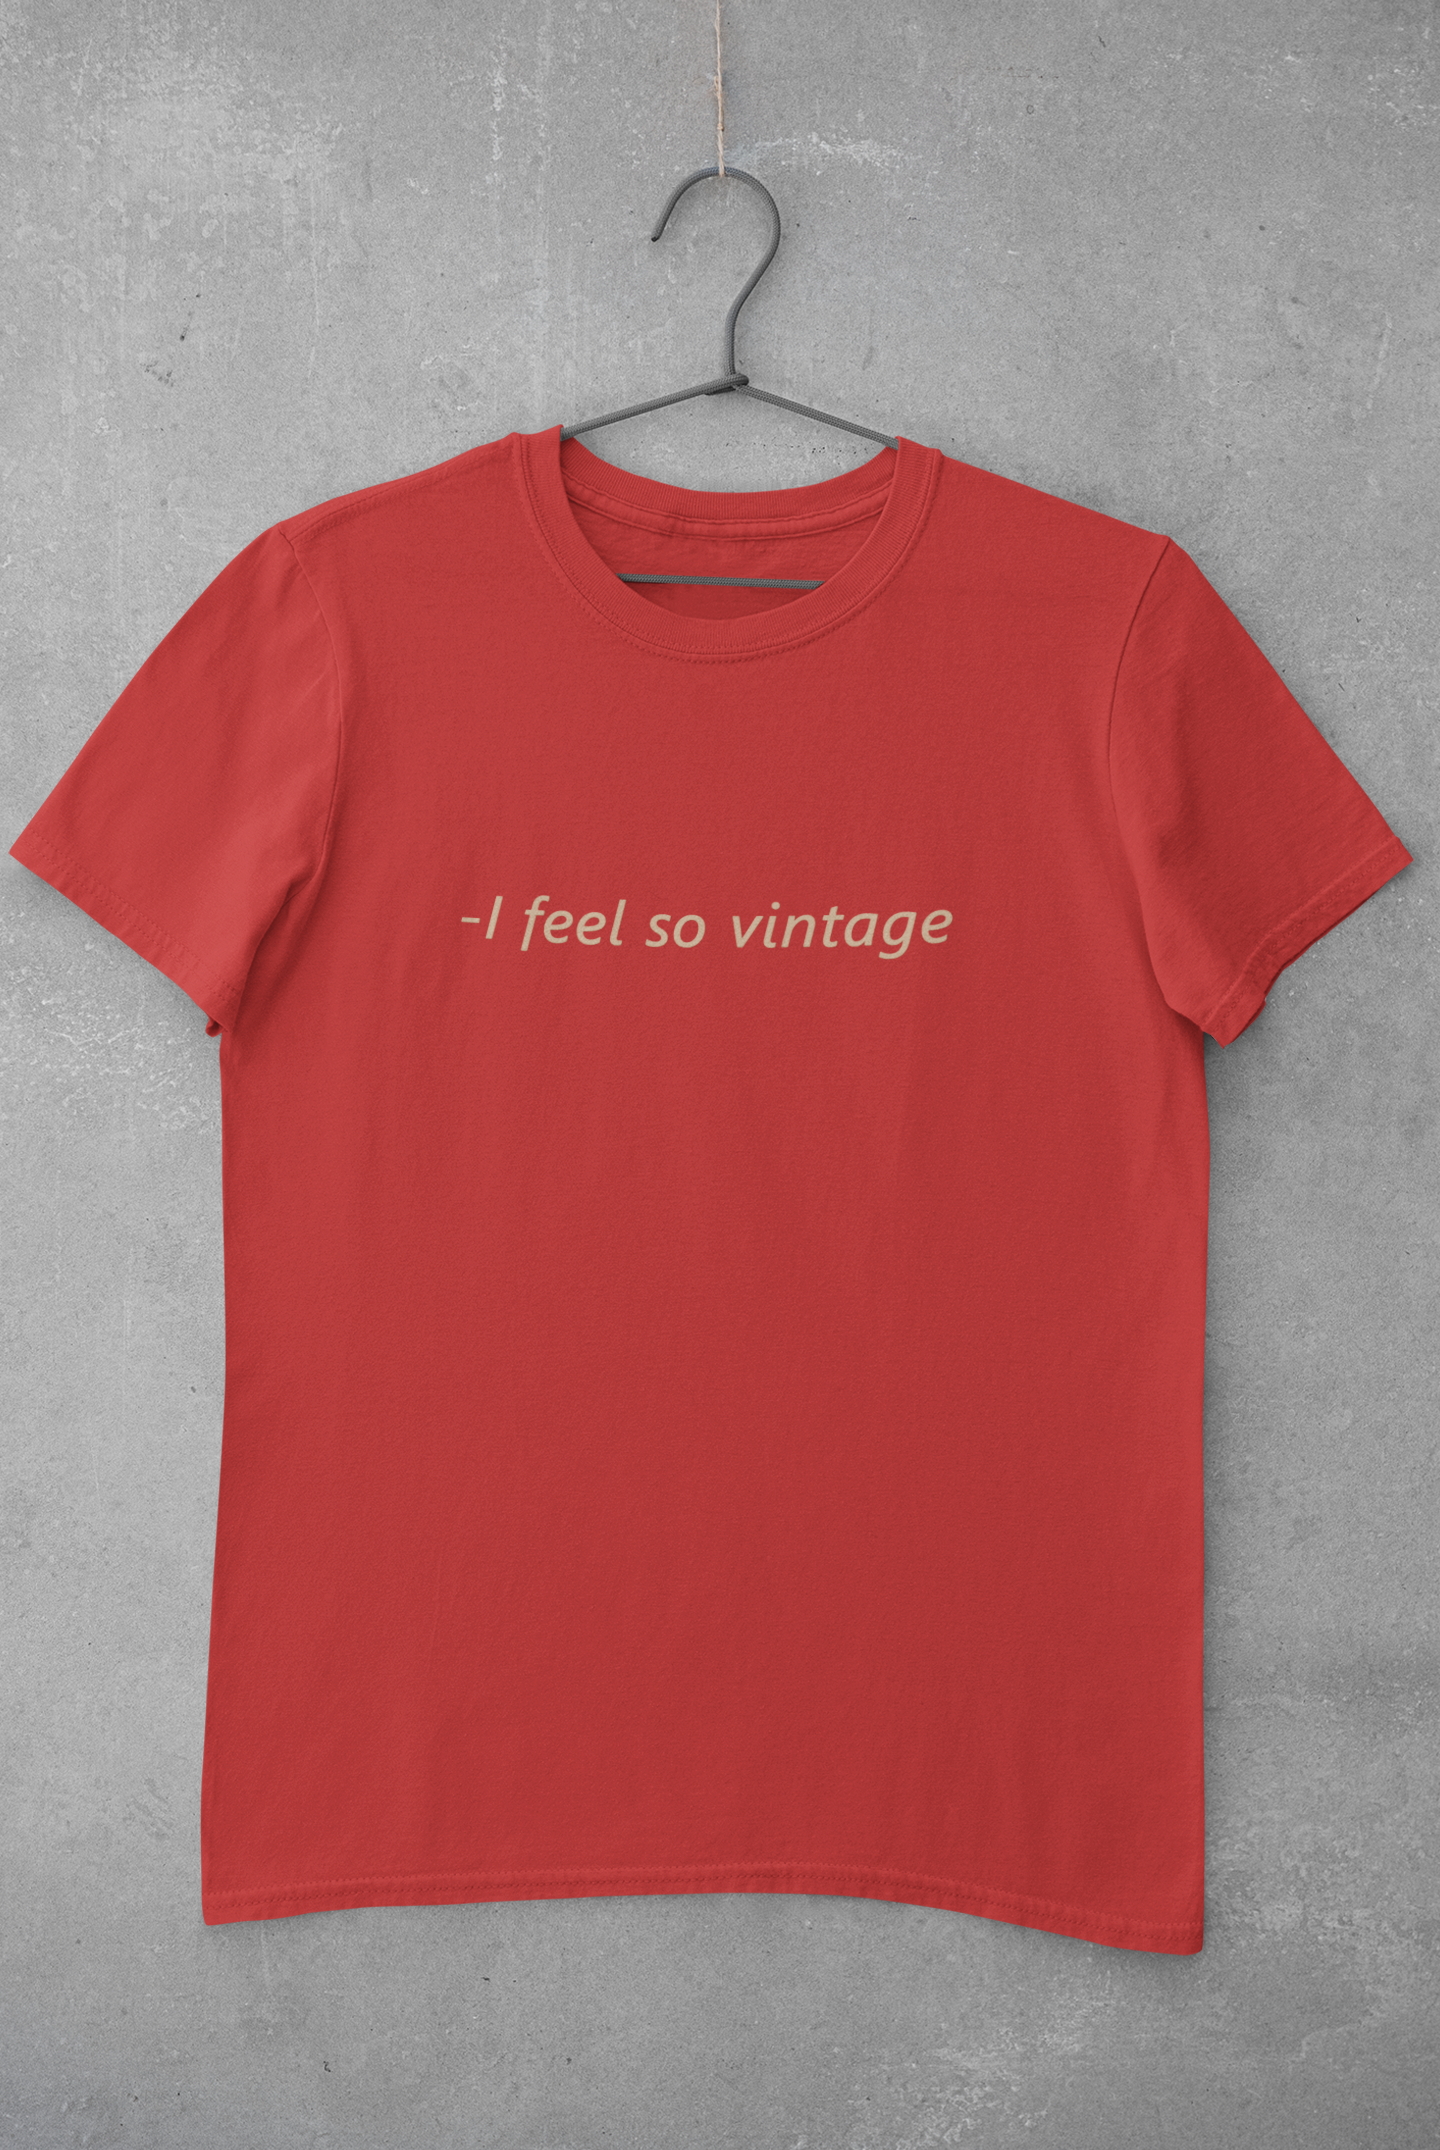 I feel Vintage Minimal Mens Half Sleeves T-shirt- FunkyTeesClub